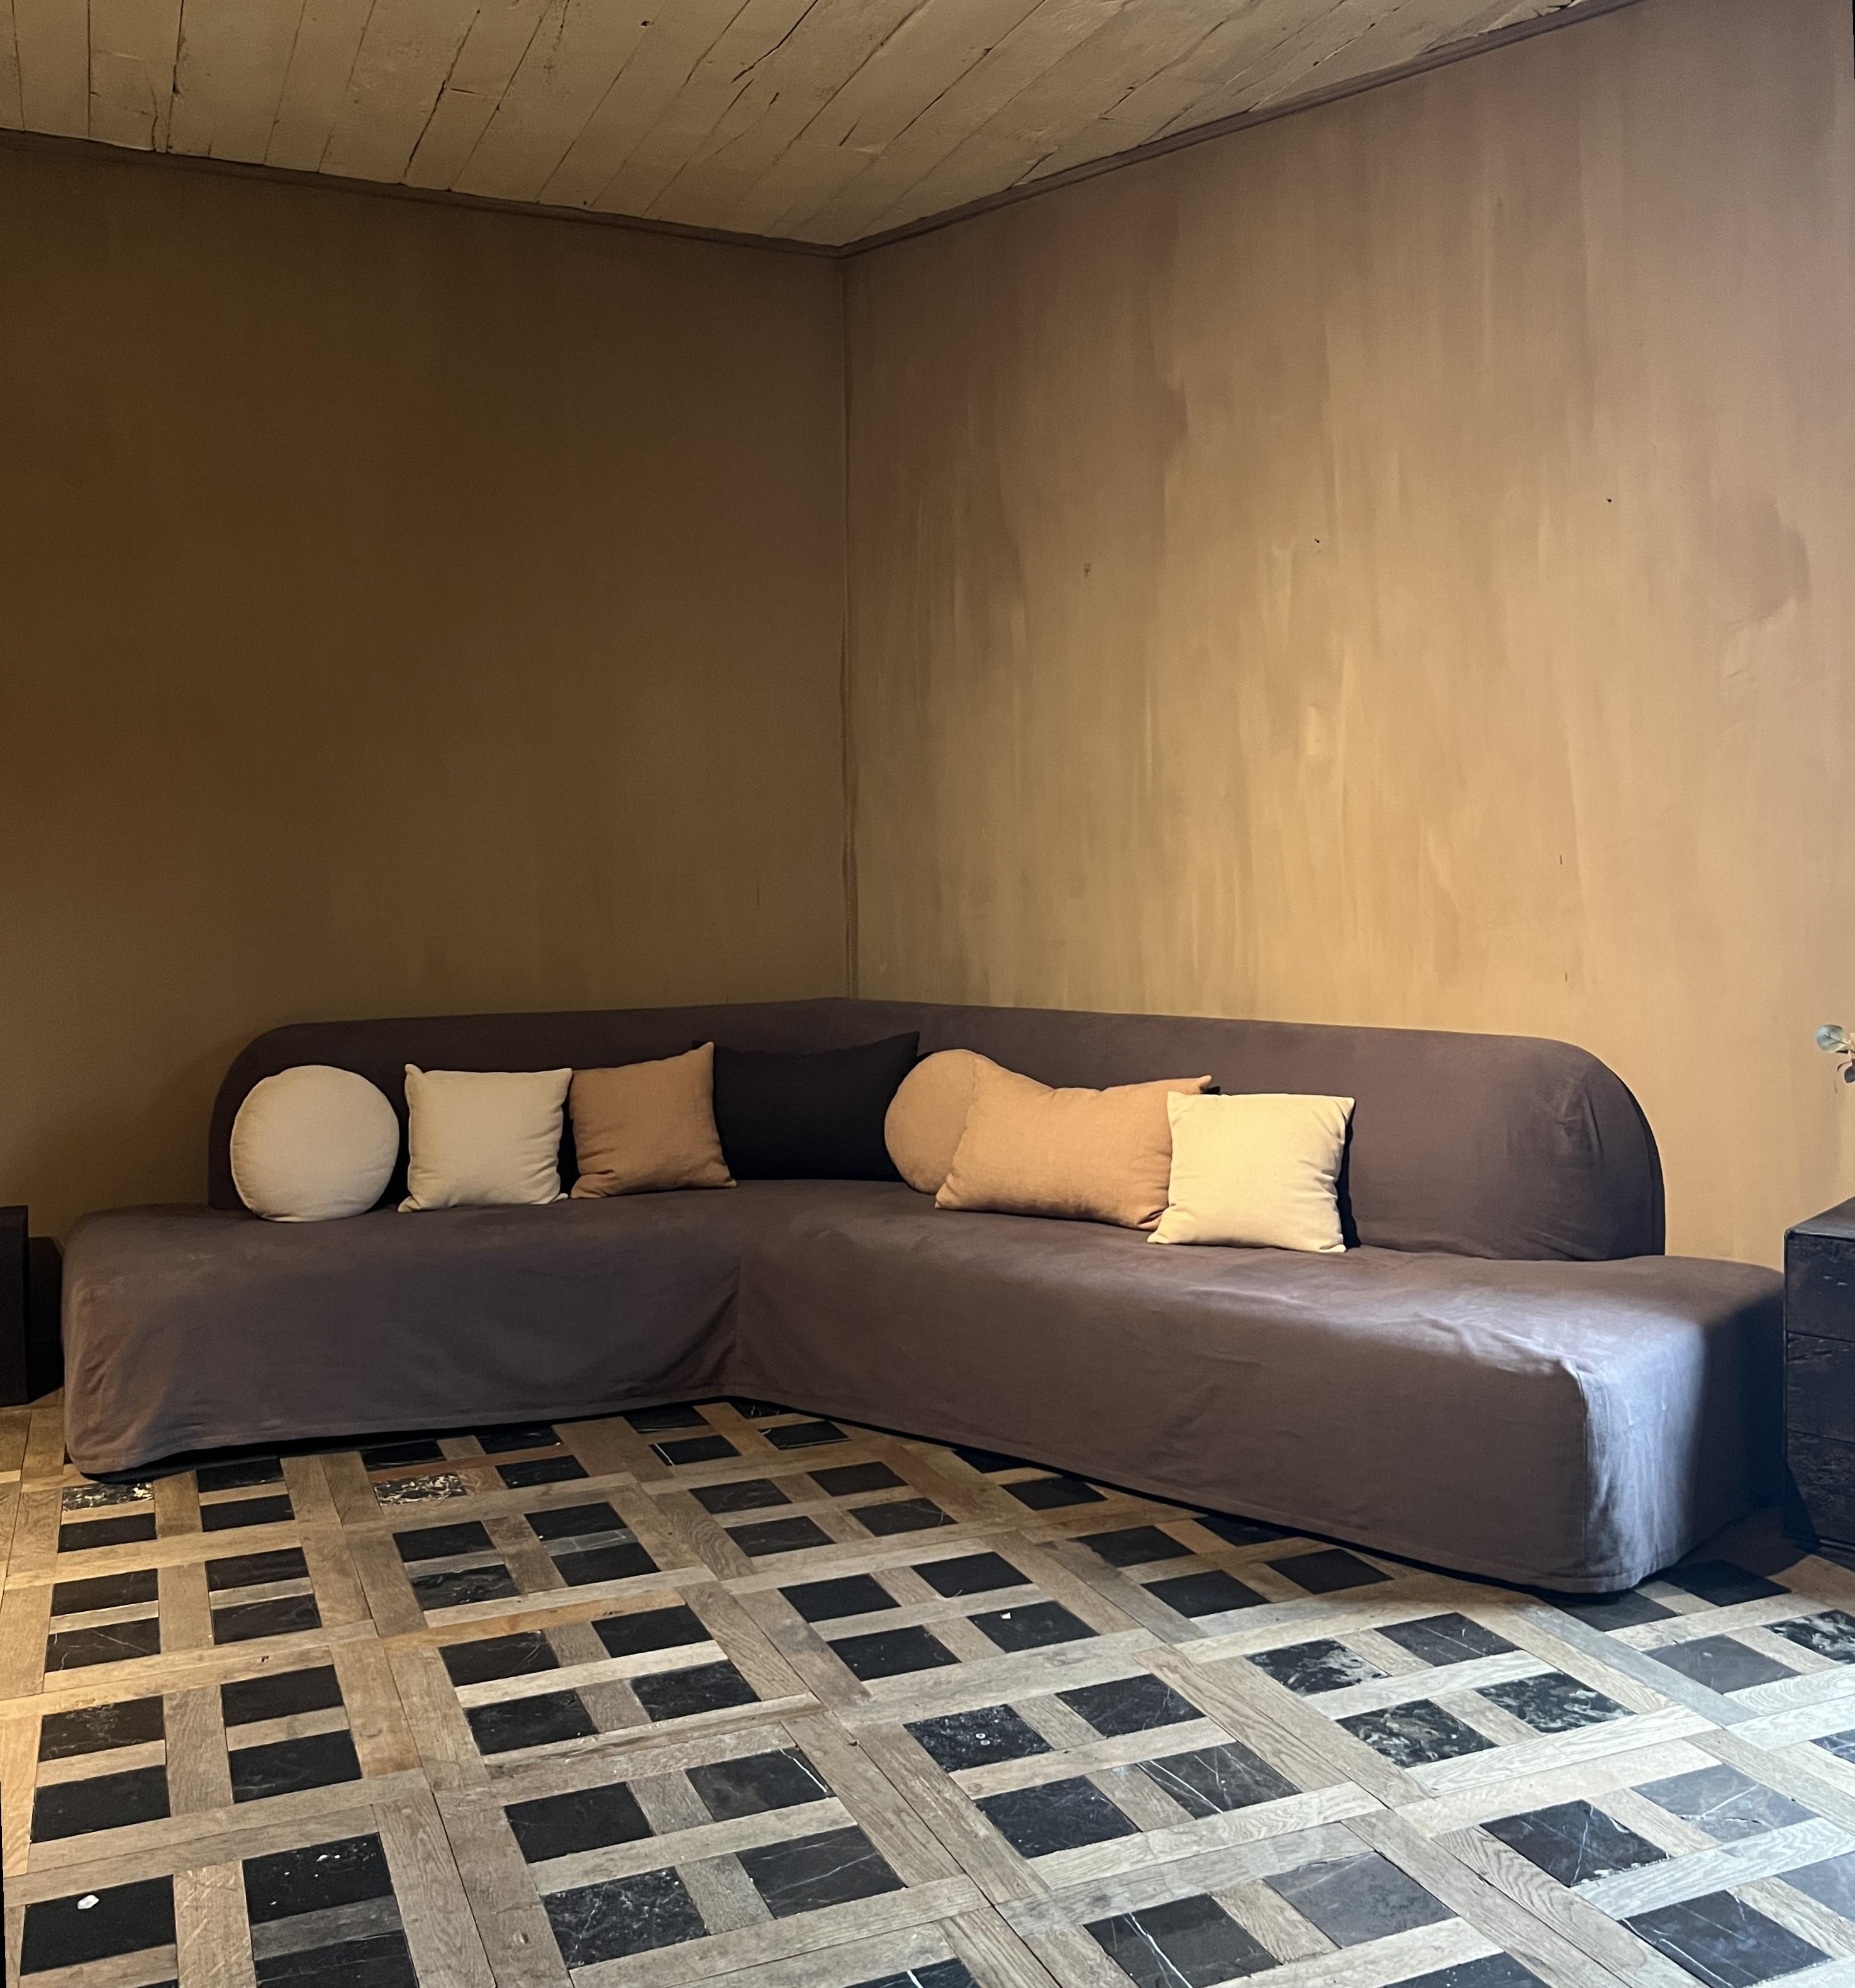 Unser Sofa TRISTAN kann in jeder gewünschten Größe angefertigt werden. Er wird standardmäßig mit einem Bezug aus Leinen und 6 Kissen geliefert. Alle Farben können aus unserem Musterbuch ausgewählt werden. Der angegebene Preis gilt für ein gerades